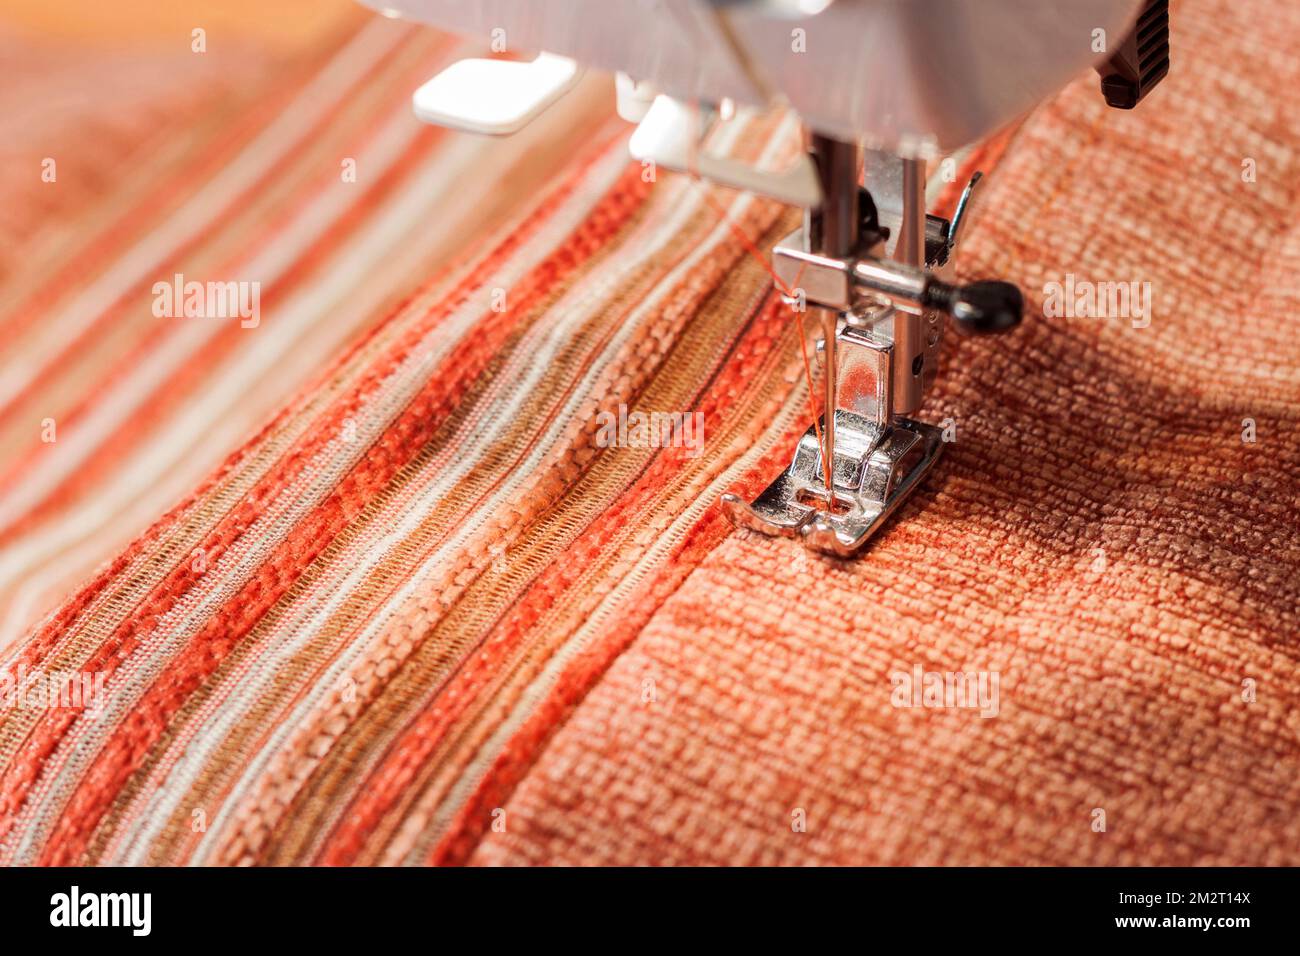 Machine à coudre presse le pied et le tissu orange. Processus de couture Banque D'Images